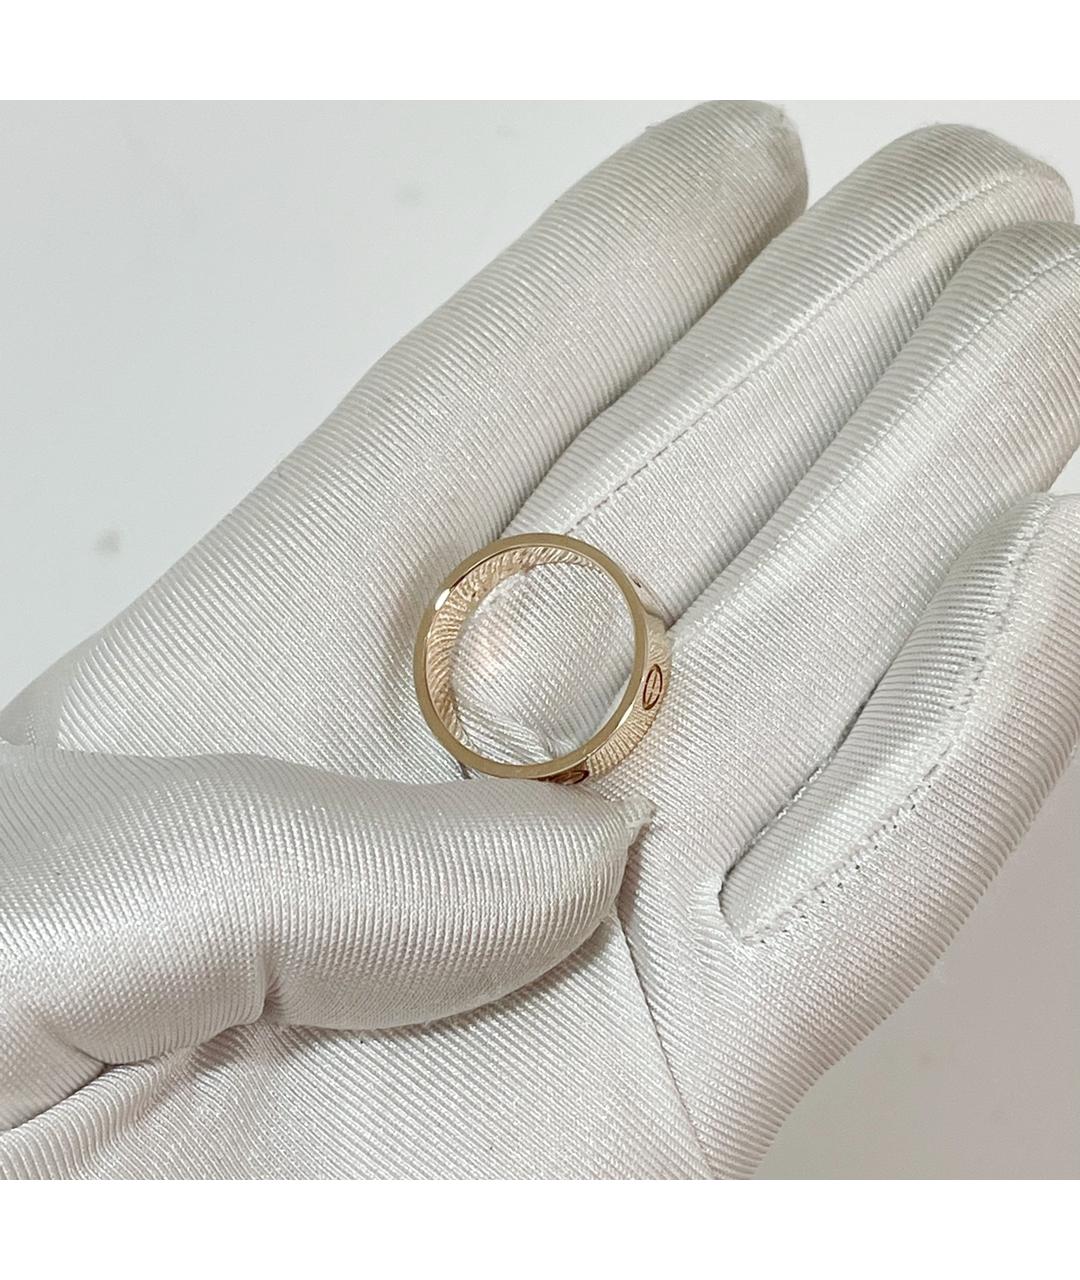 CARTIER Золотое кольцо из розового золота, фото 4